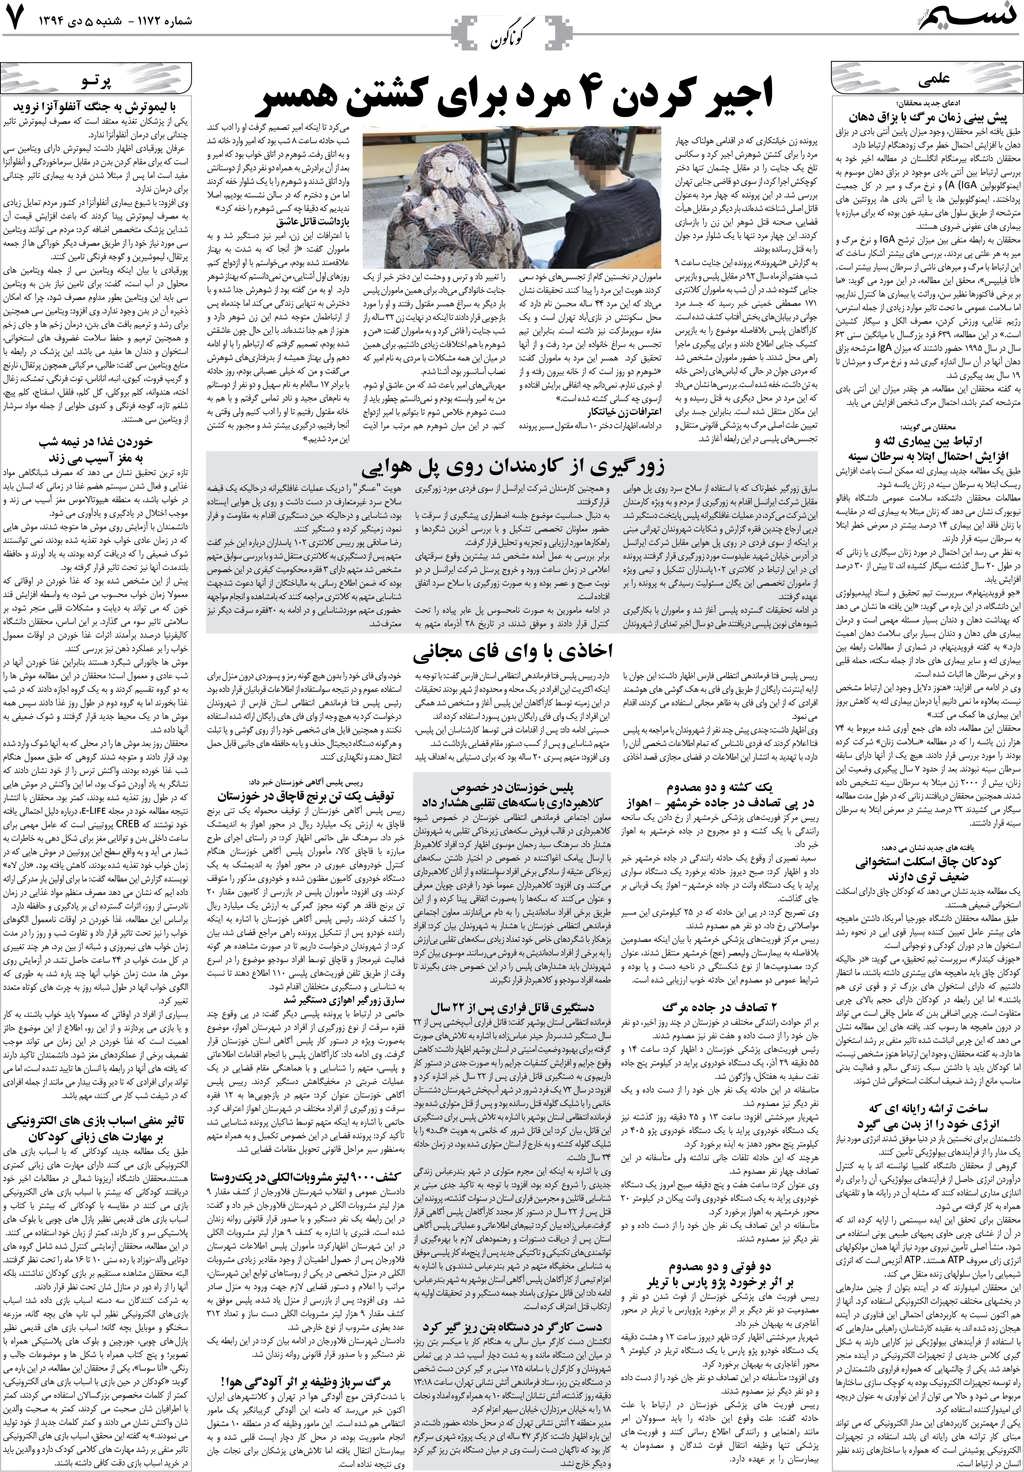 صفحه گوناگون روزنامه نسیم شماره 1172